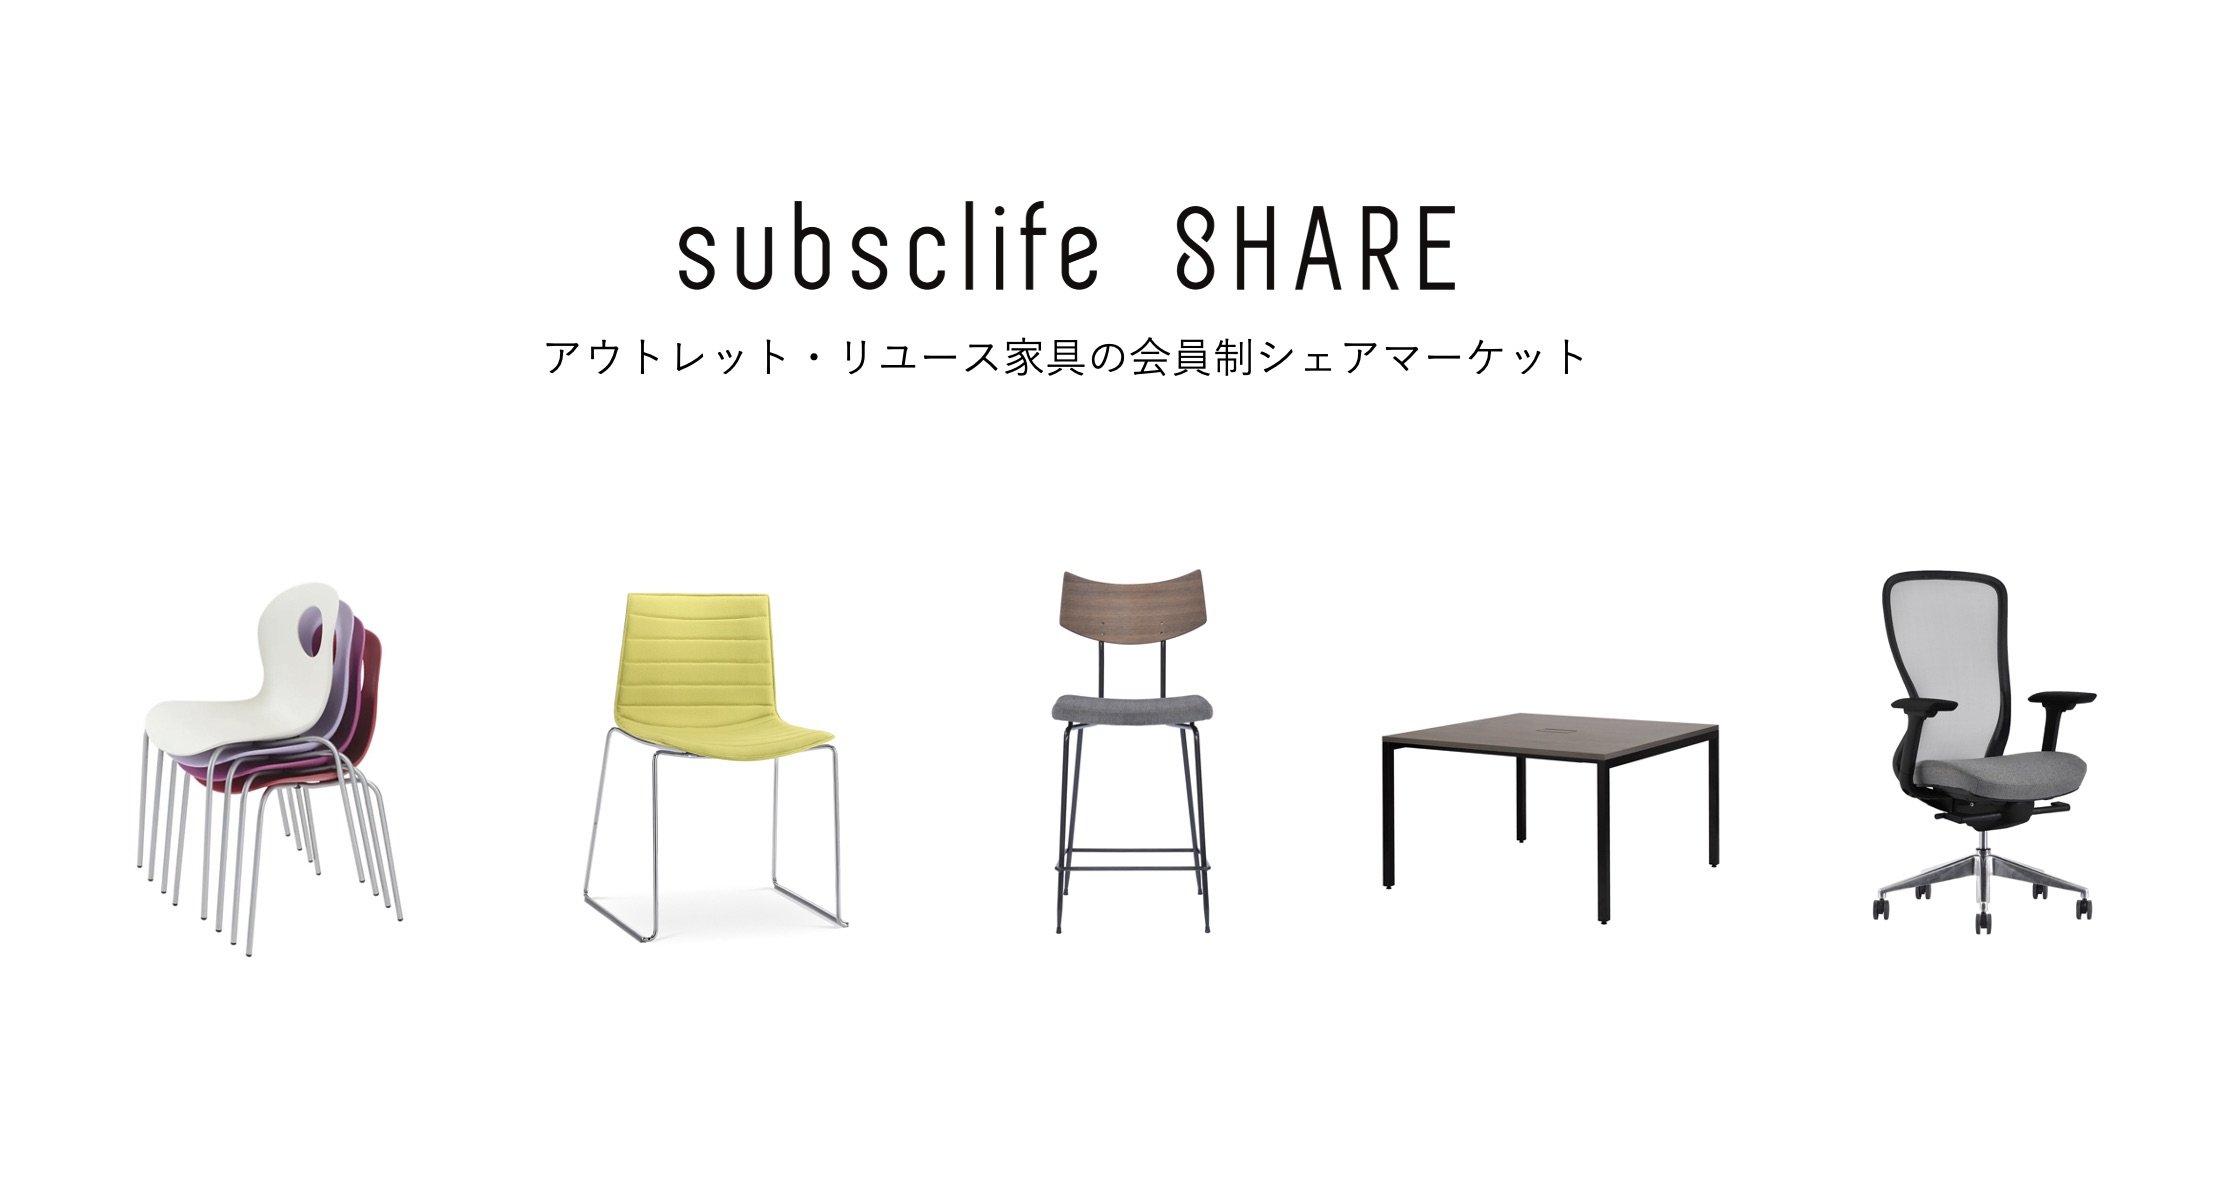 subsclifeが新たにスタートした「subsclife SHARE」では法人同士でアウトレット家具やリユース家具を売買できる 